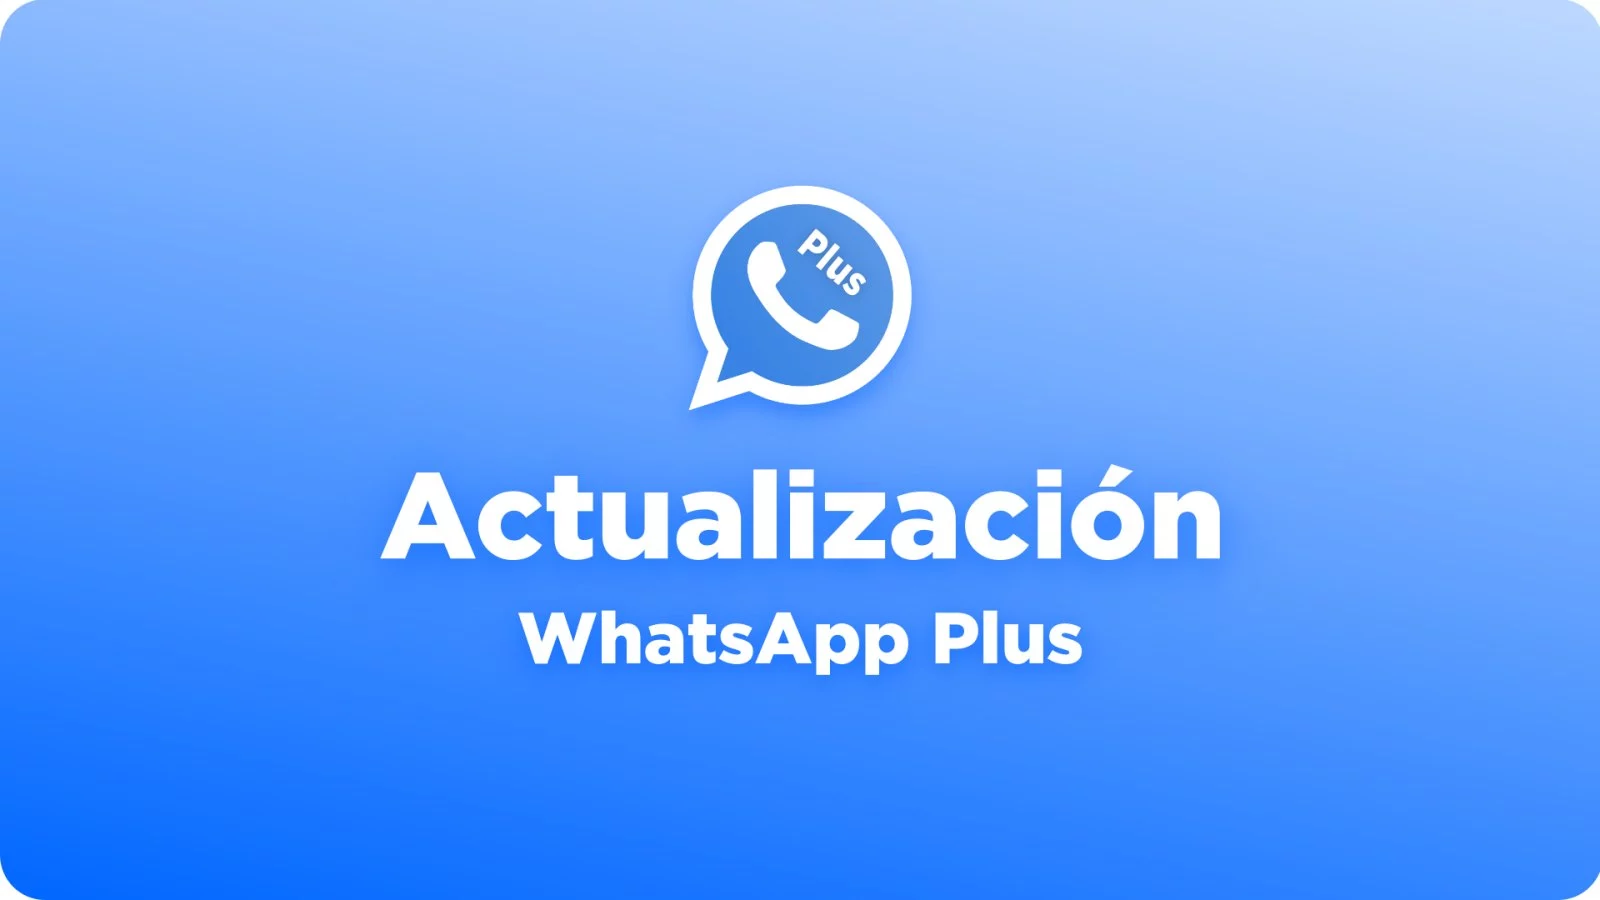 WhatsApp Plus Actualización